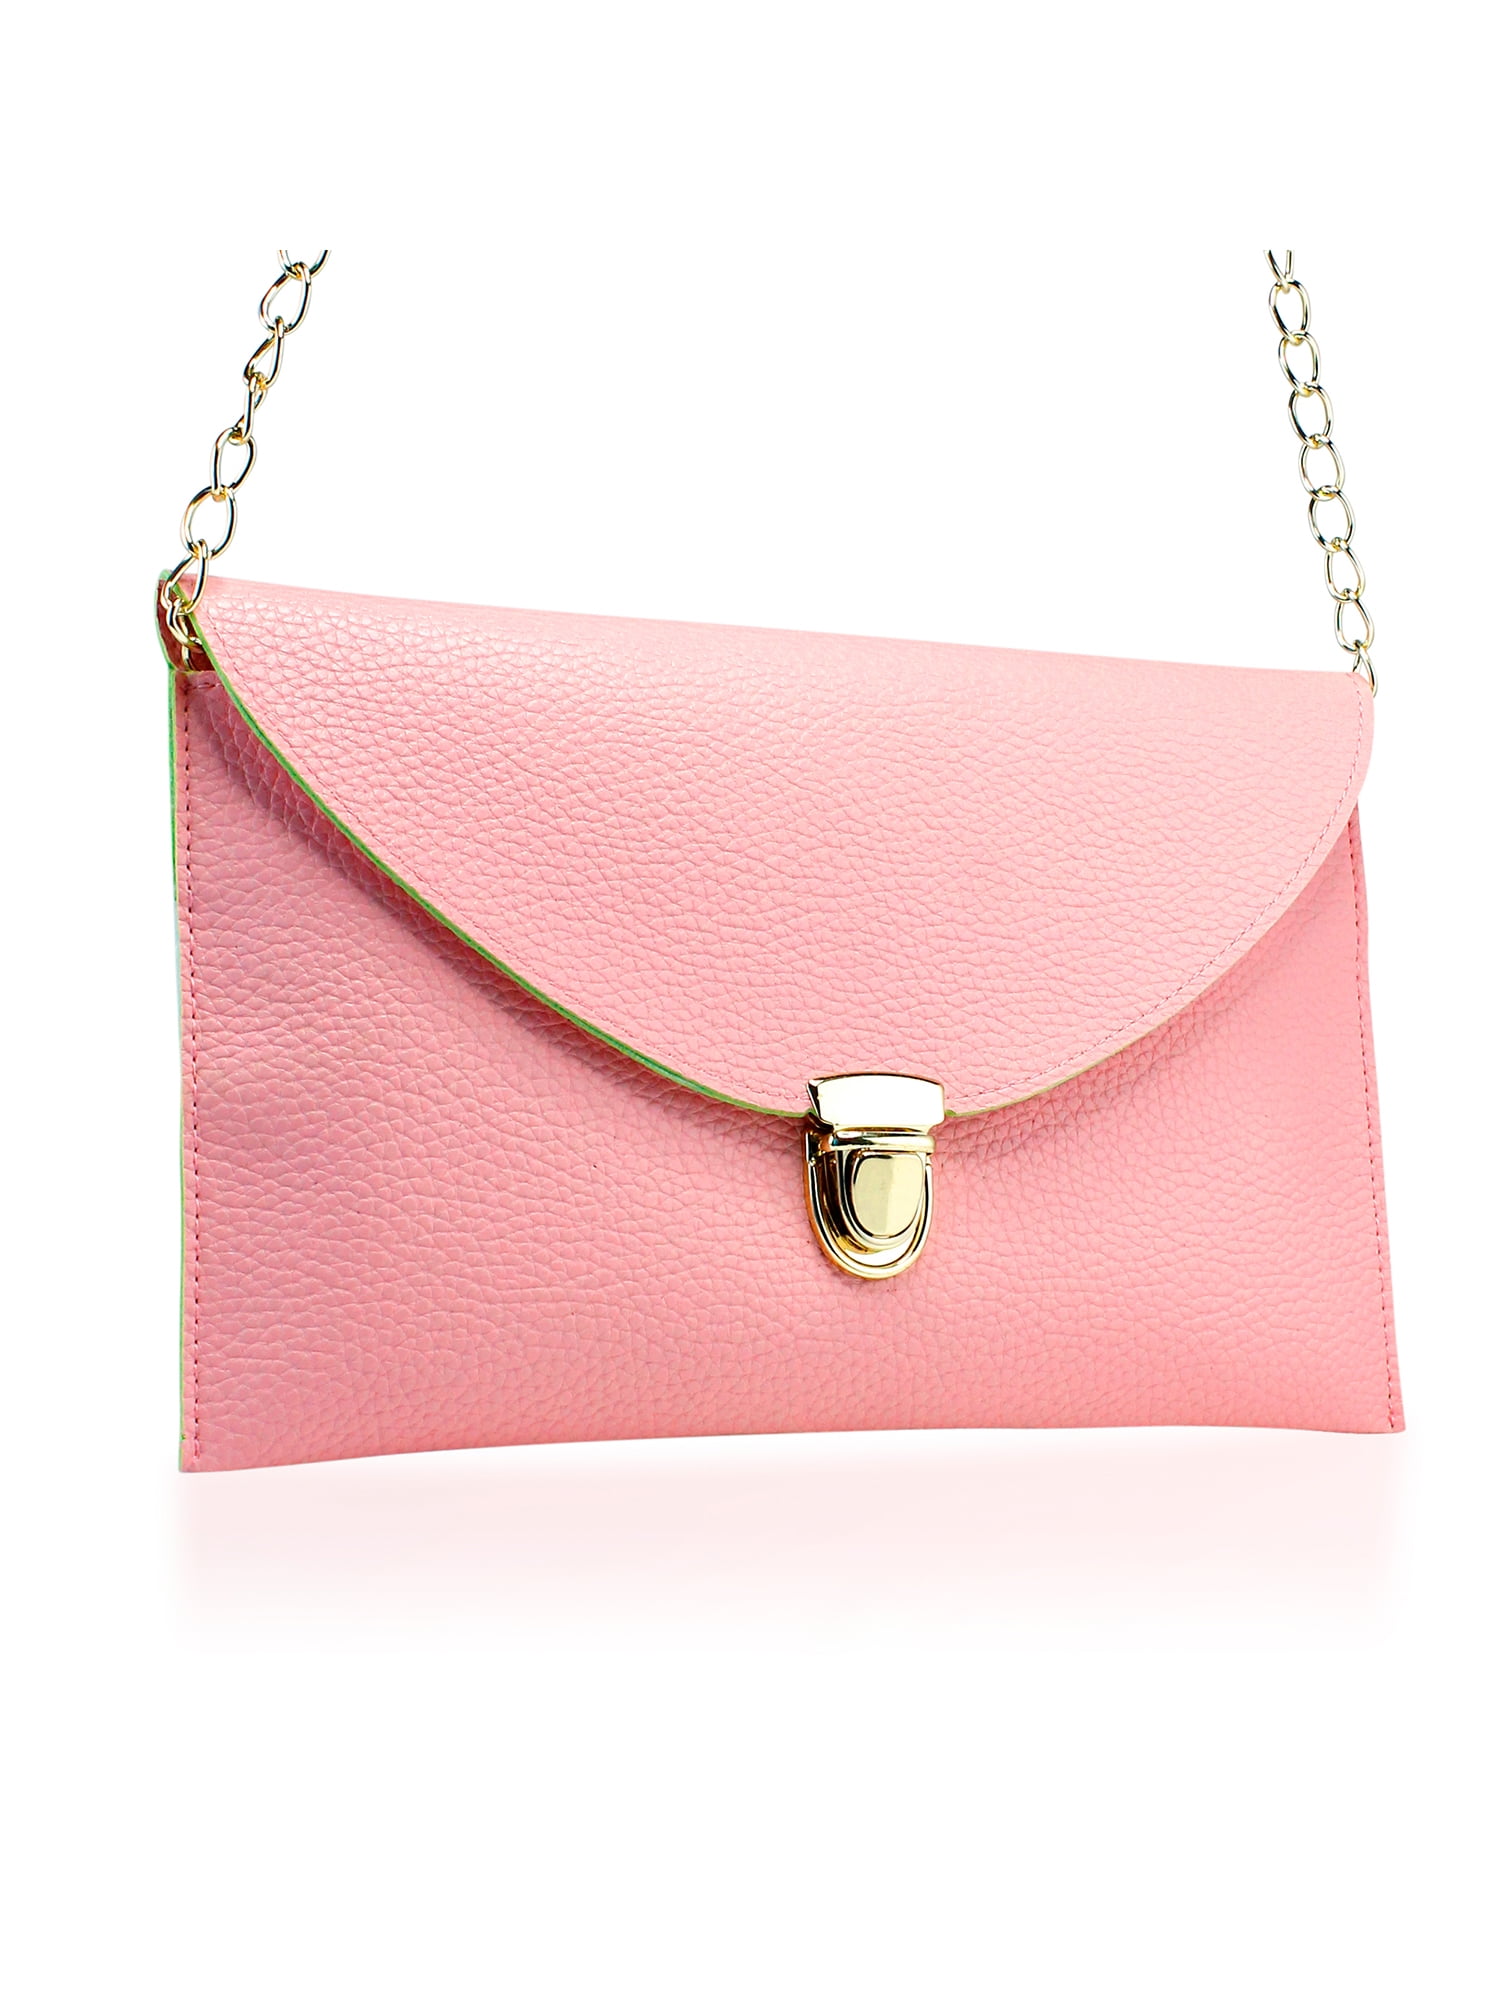 Women Handbag Shoulder Bags Envelope Clutch Crossbody Satchel